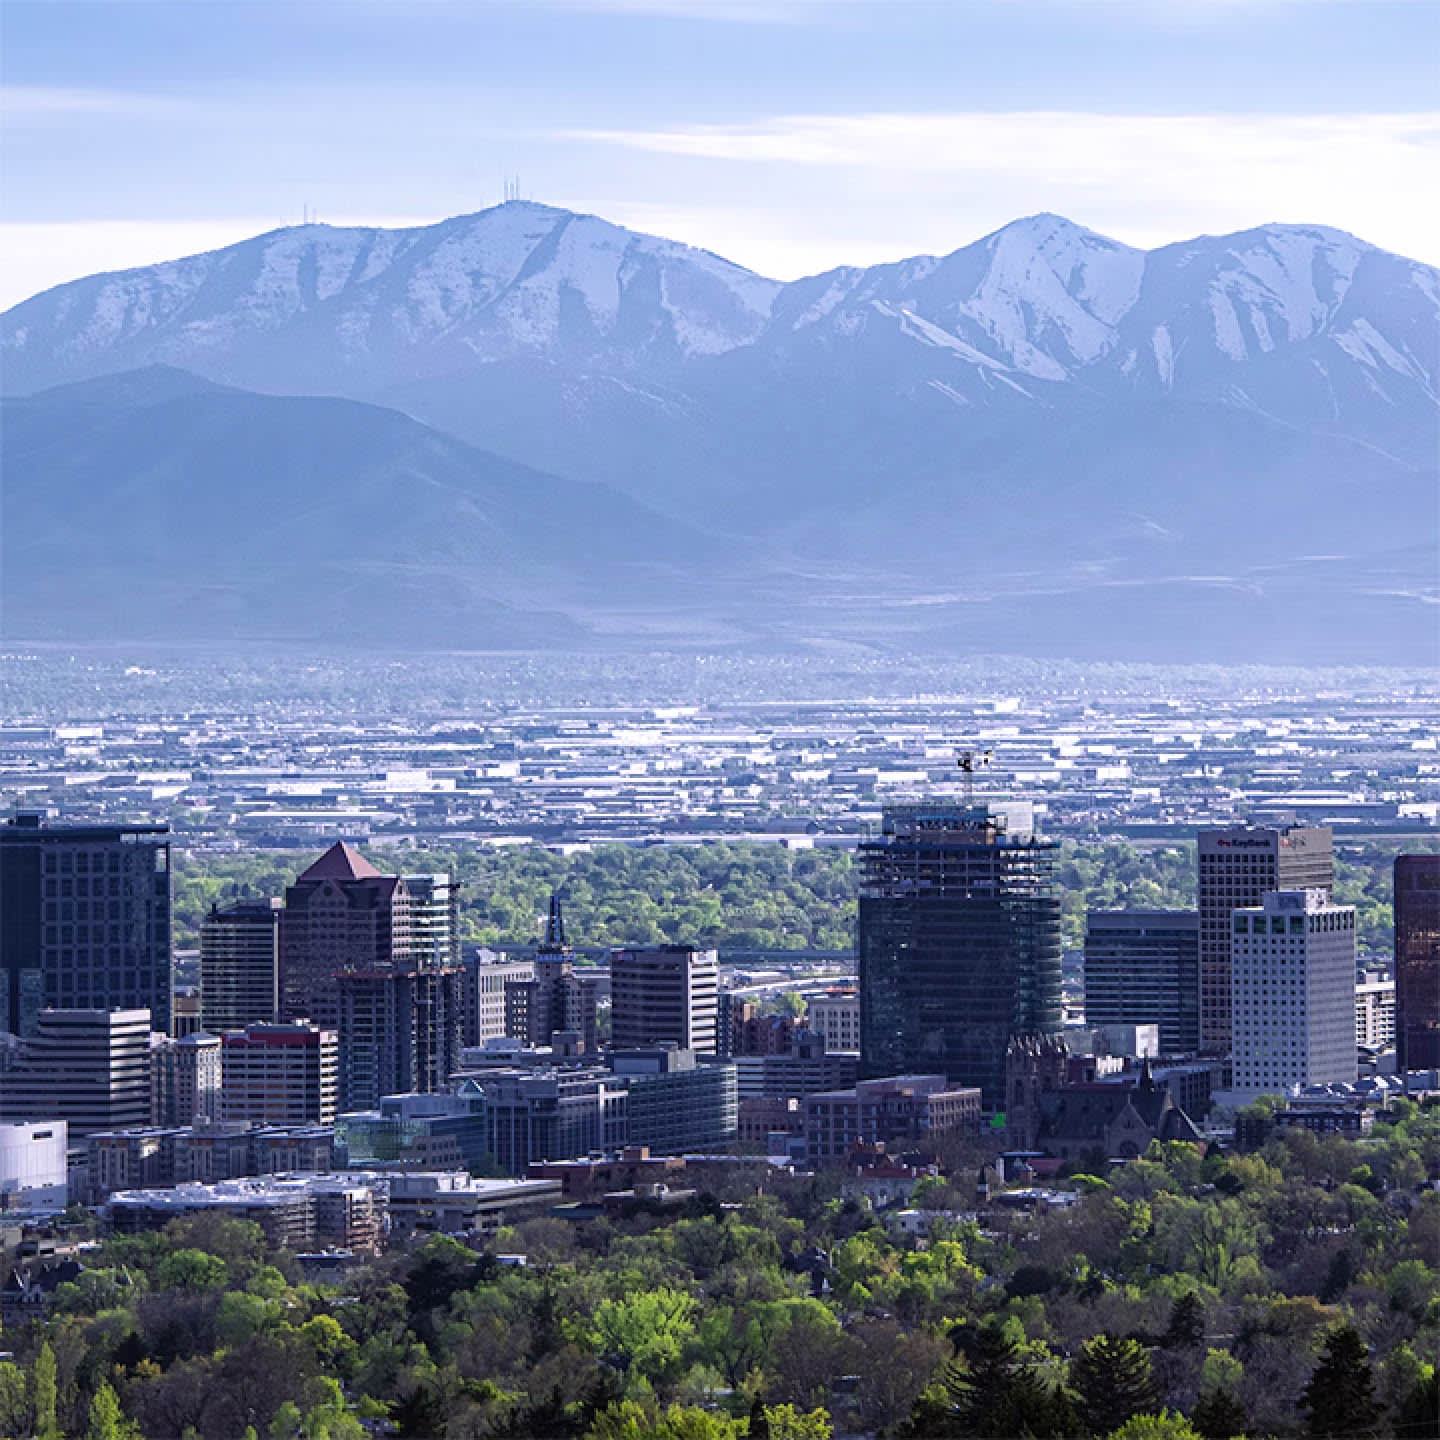 Image of a city in Utah